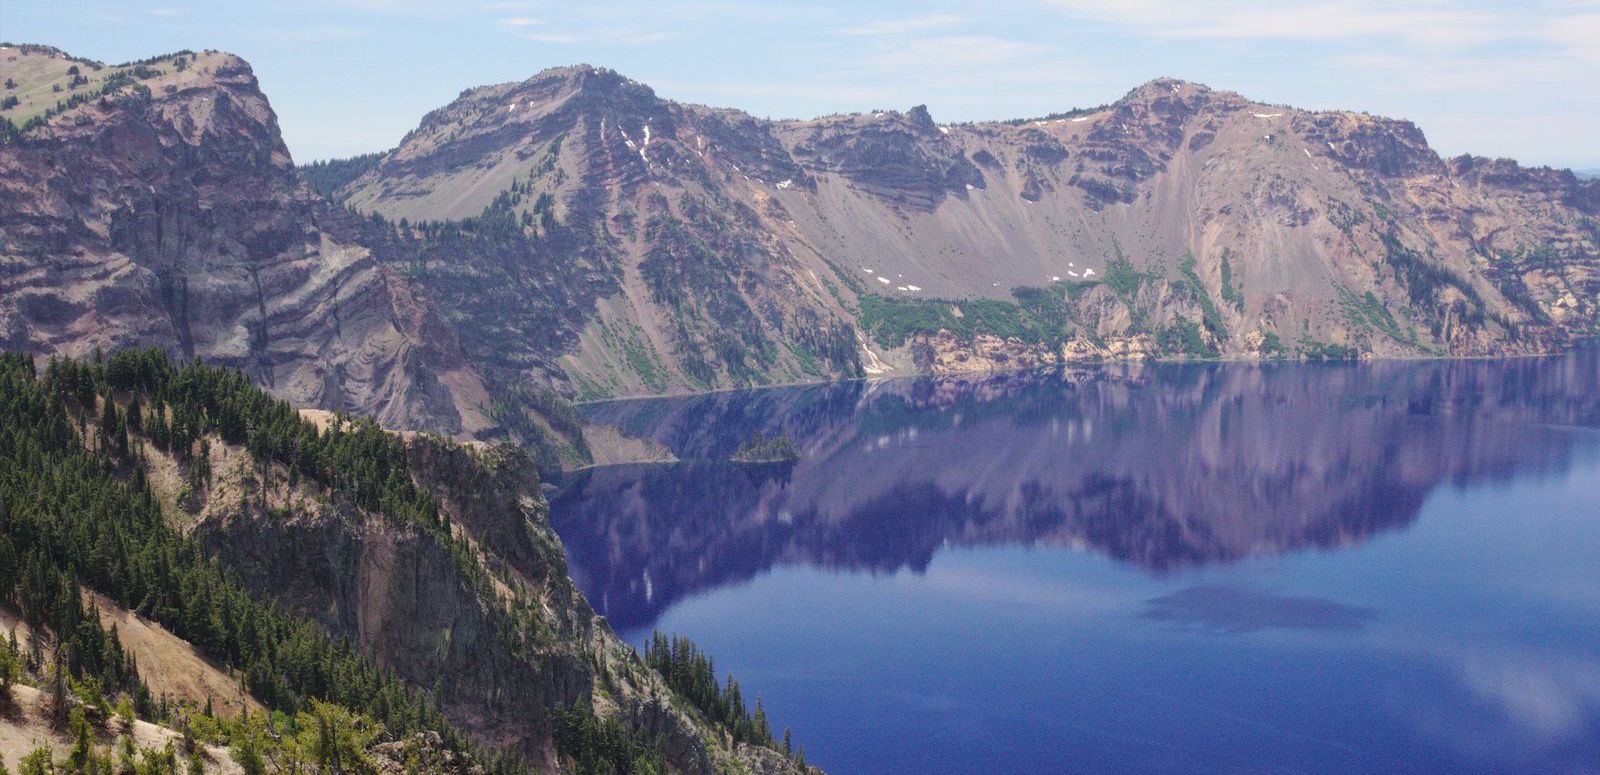 un lac beau et bleu : Crater Lake dans l'Oregon aux USA